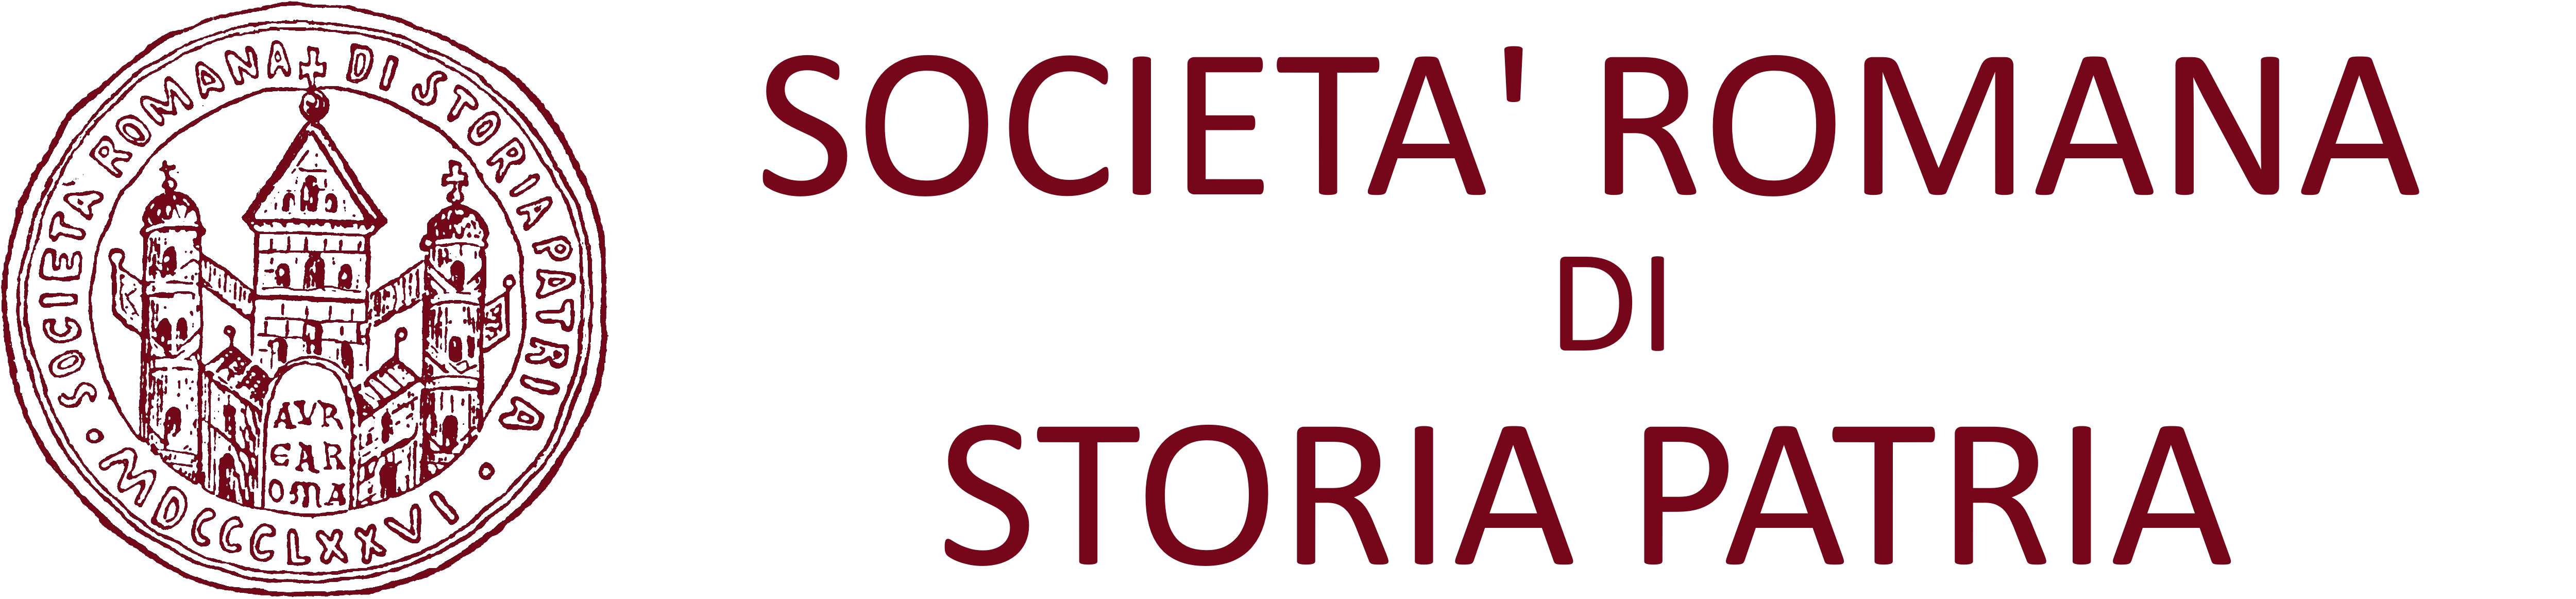 SOCIETA' ROMANA DI STORIA PATRIA